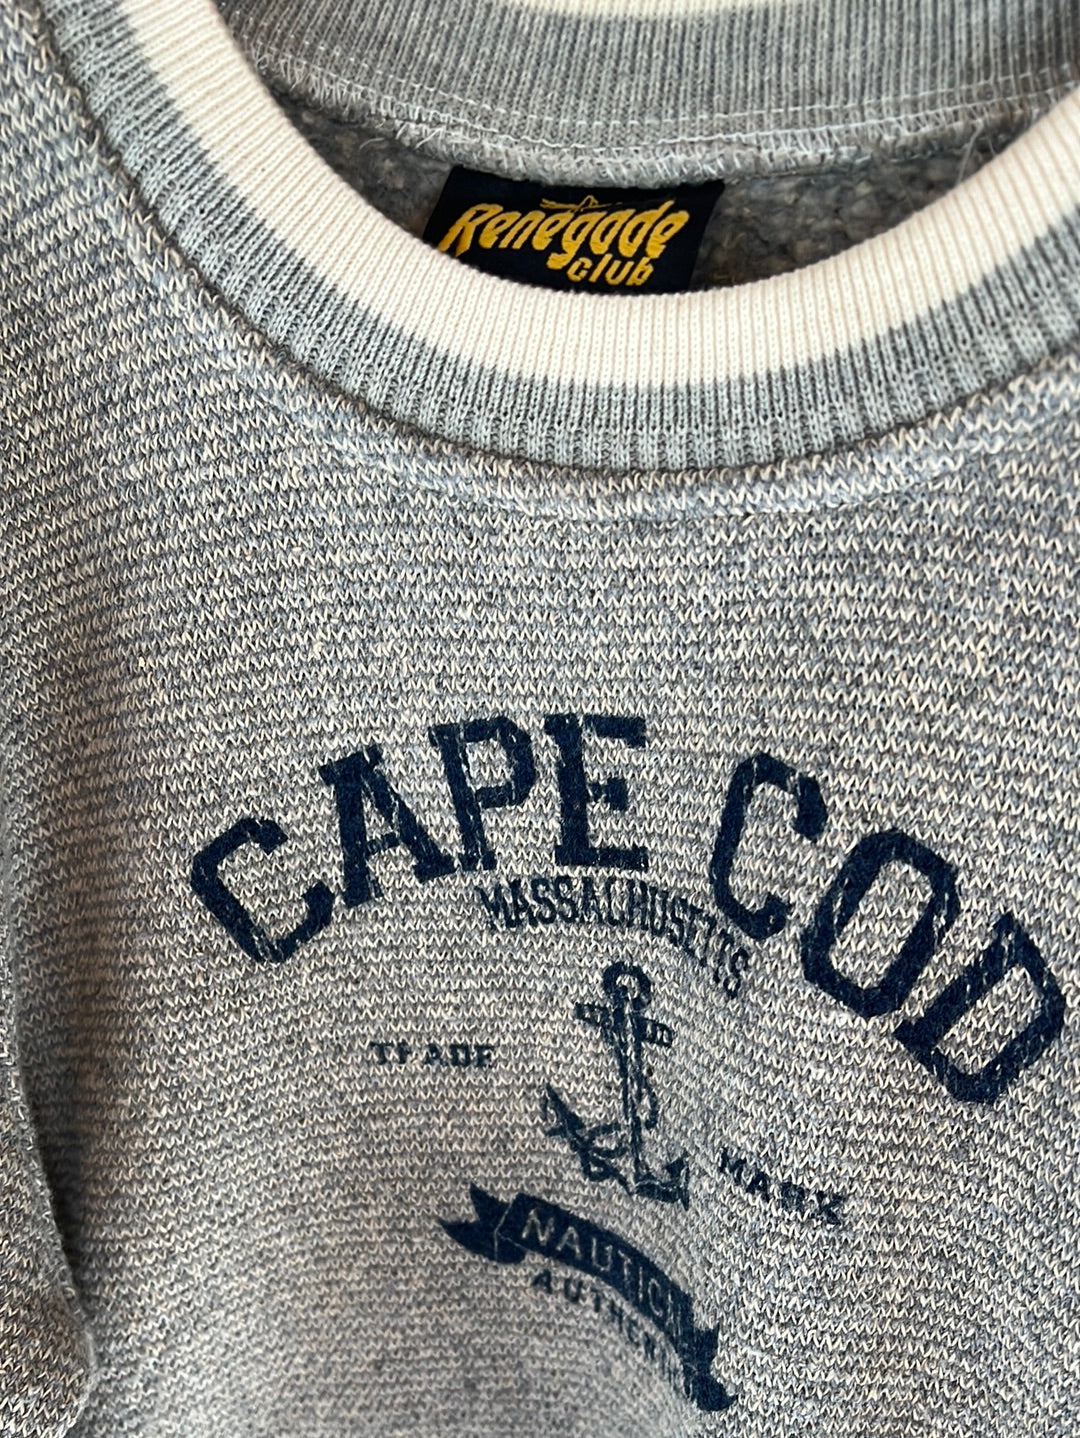 Vintage 90s Cape Cod Crew Neck